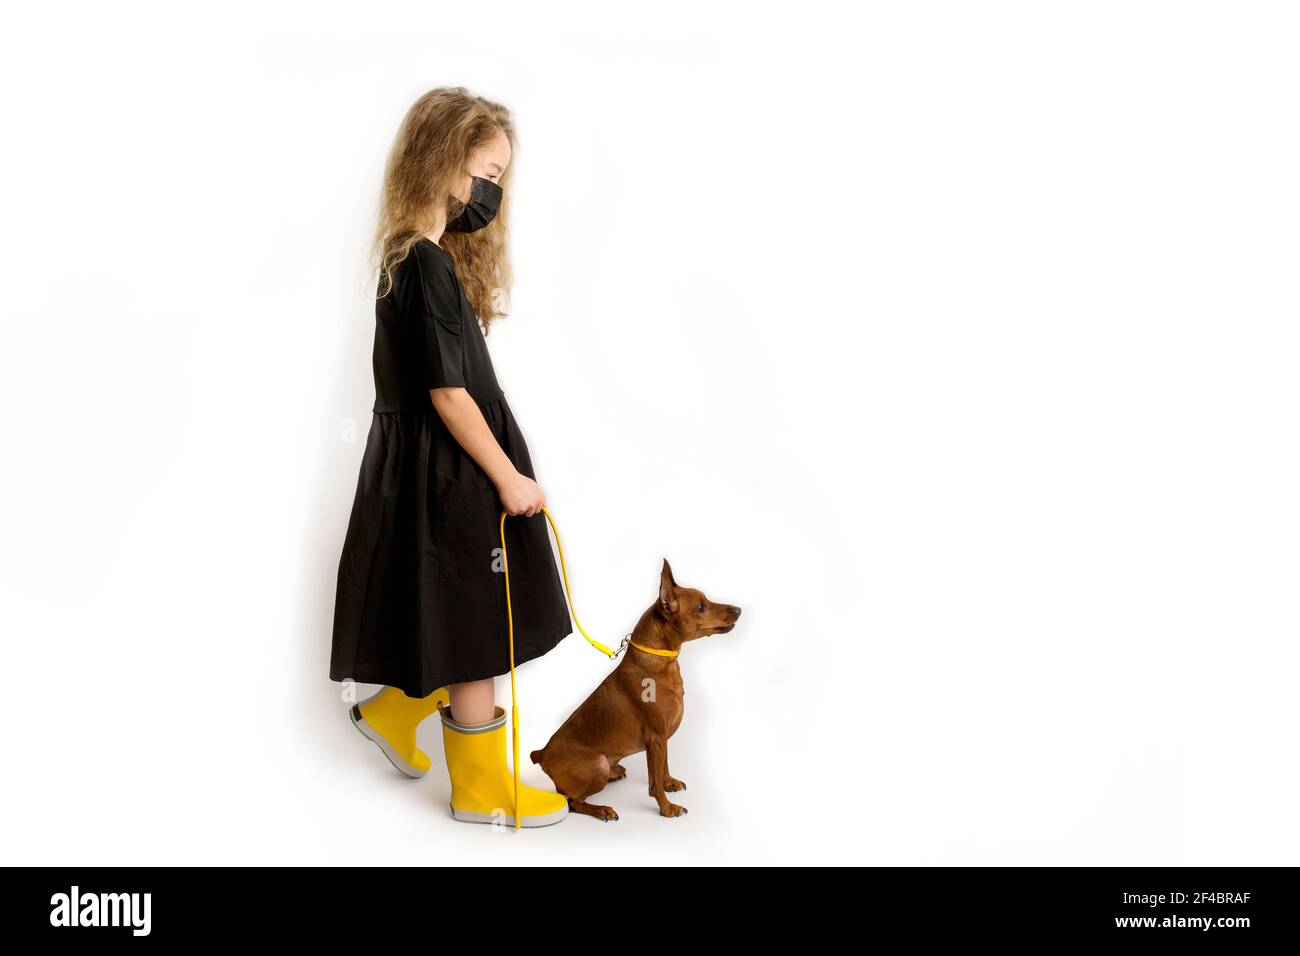 Une fille dans un masque antiviral protecteur noir marche le chien. Nouvelle réalité de la vie durant la pandémie COVID-19. Banque D'Images